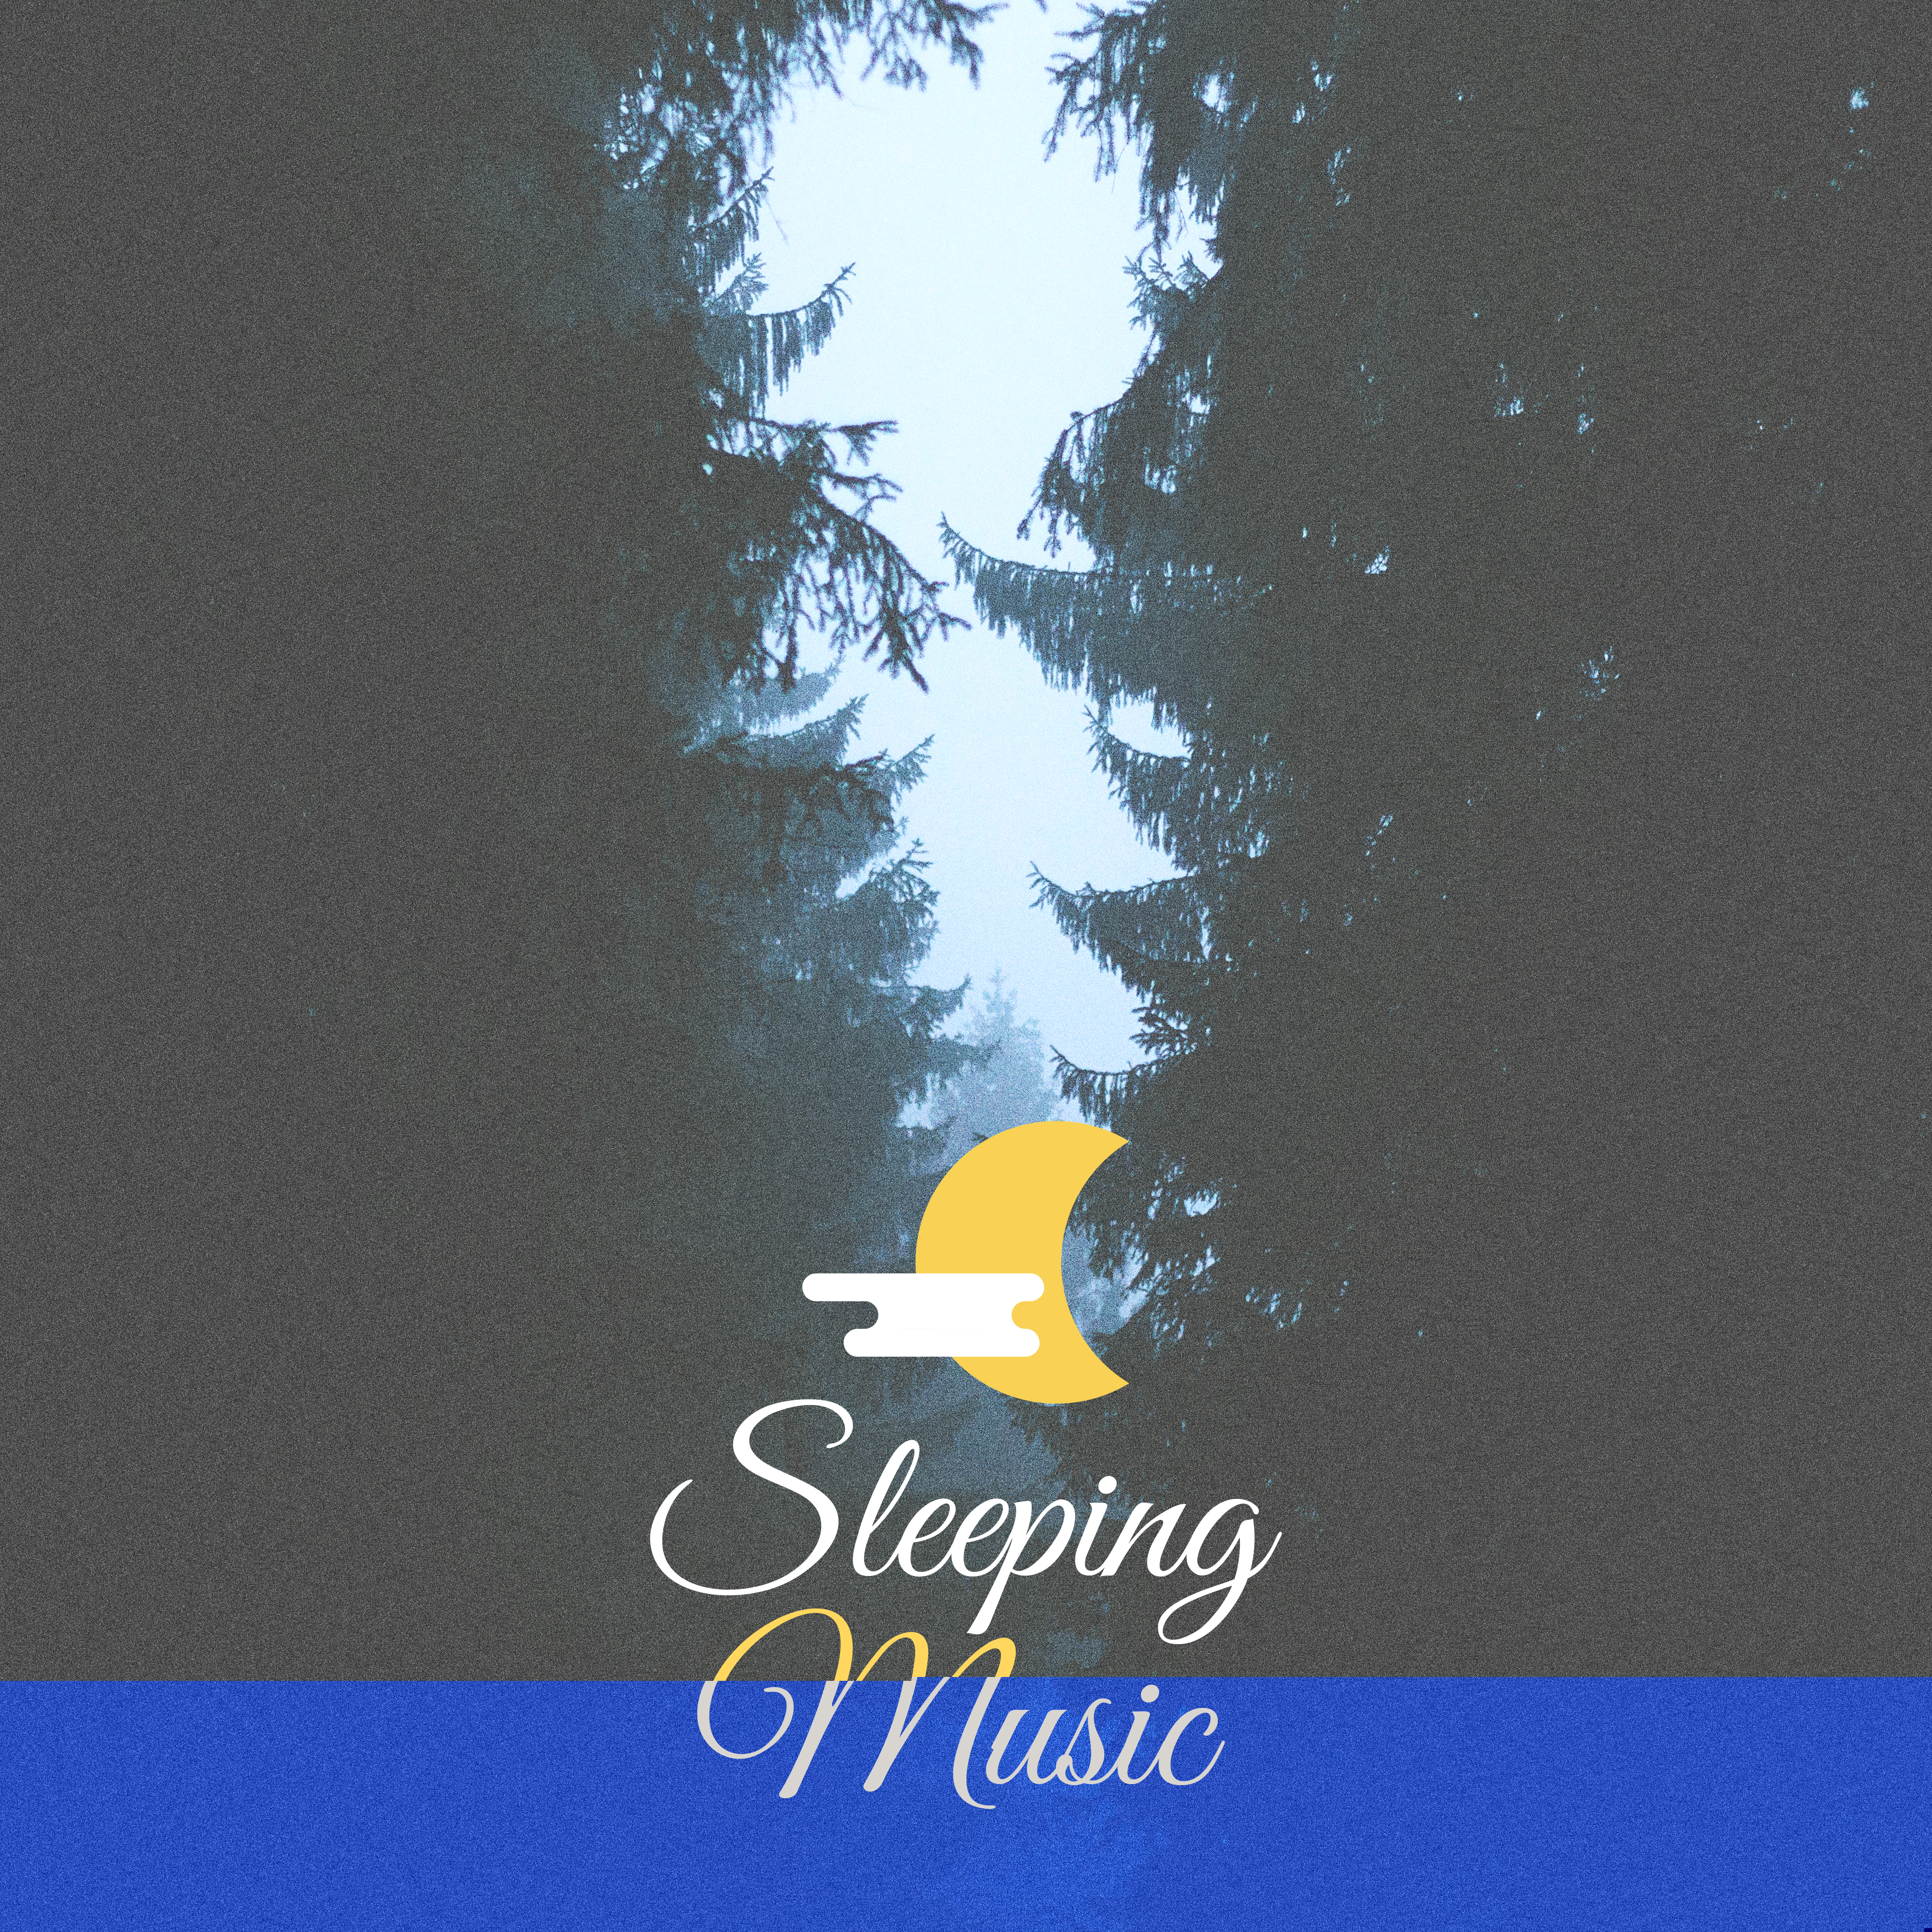 Sleeping Music  Calming Sounds of Nature, Gentle Rain, Ocean Waves Deep Relax  Good Night, Easily Fall Asleep